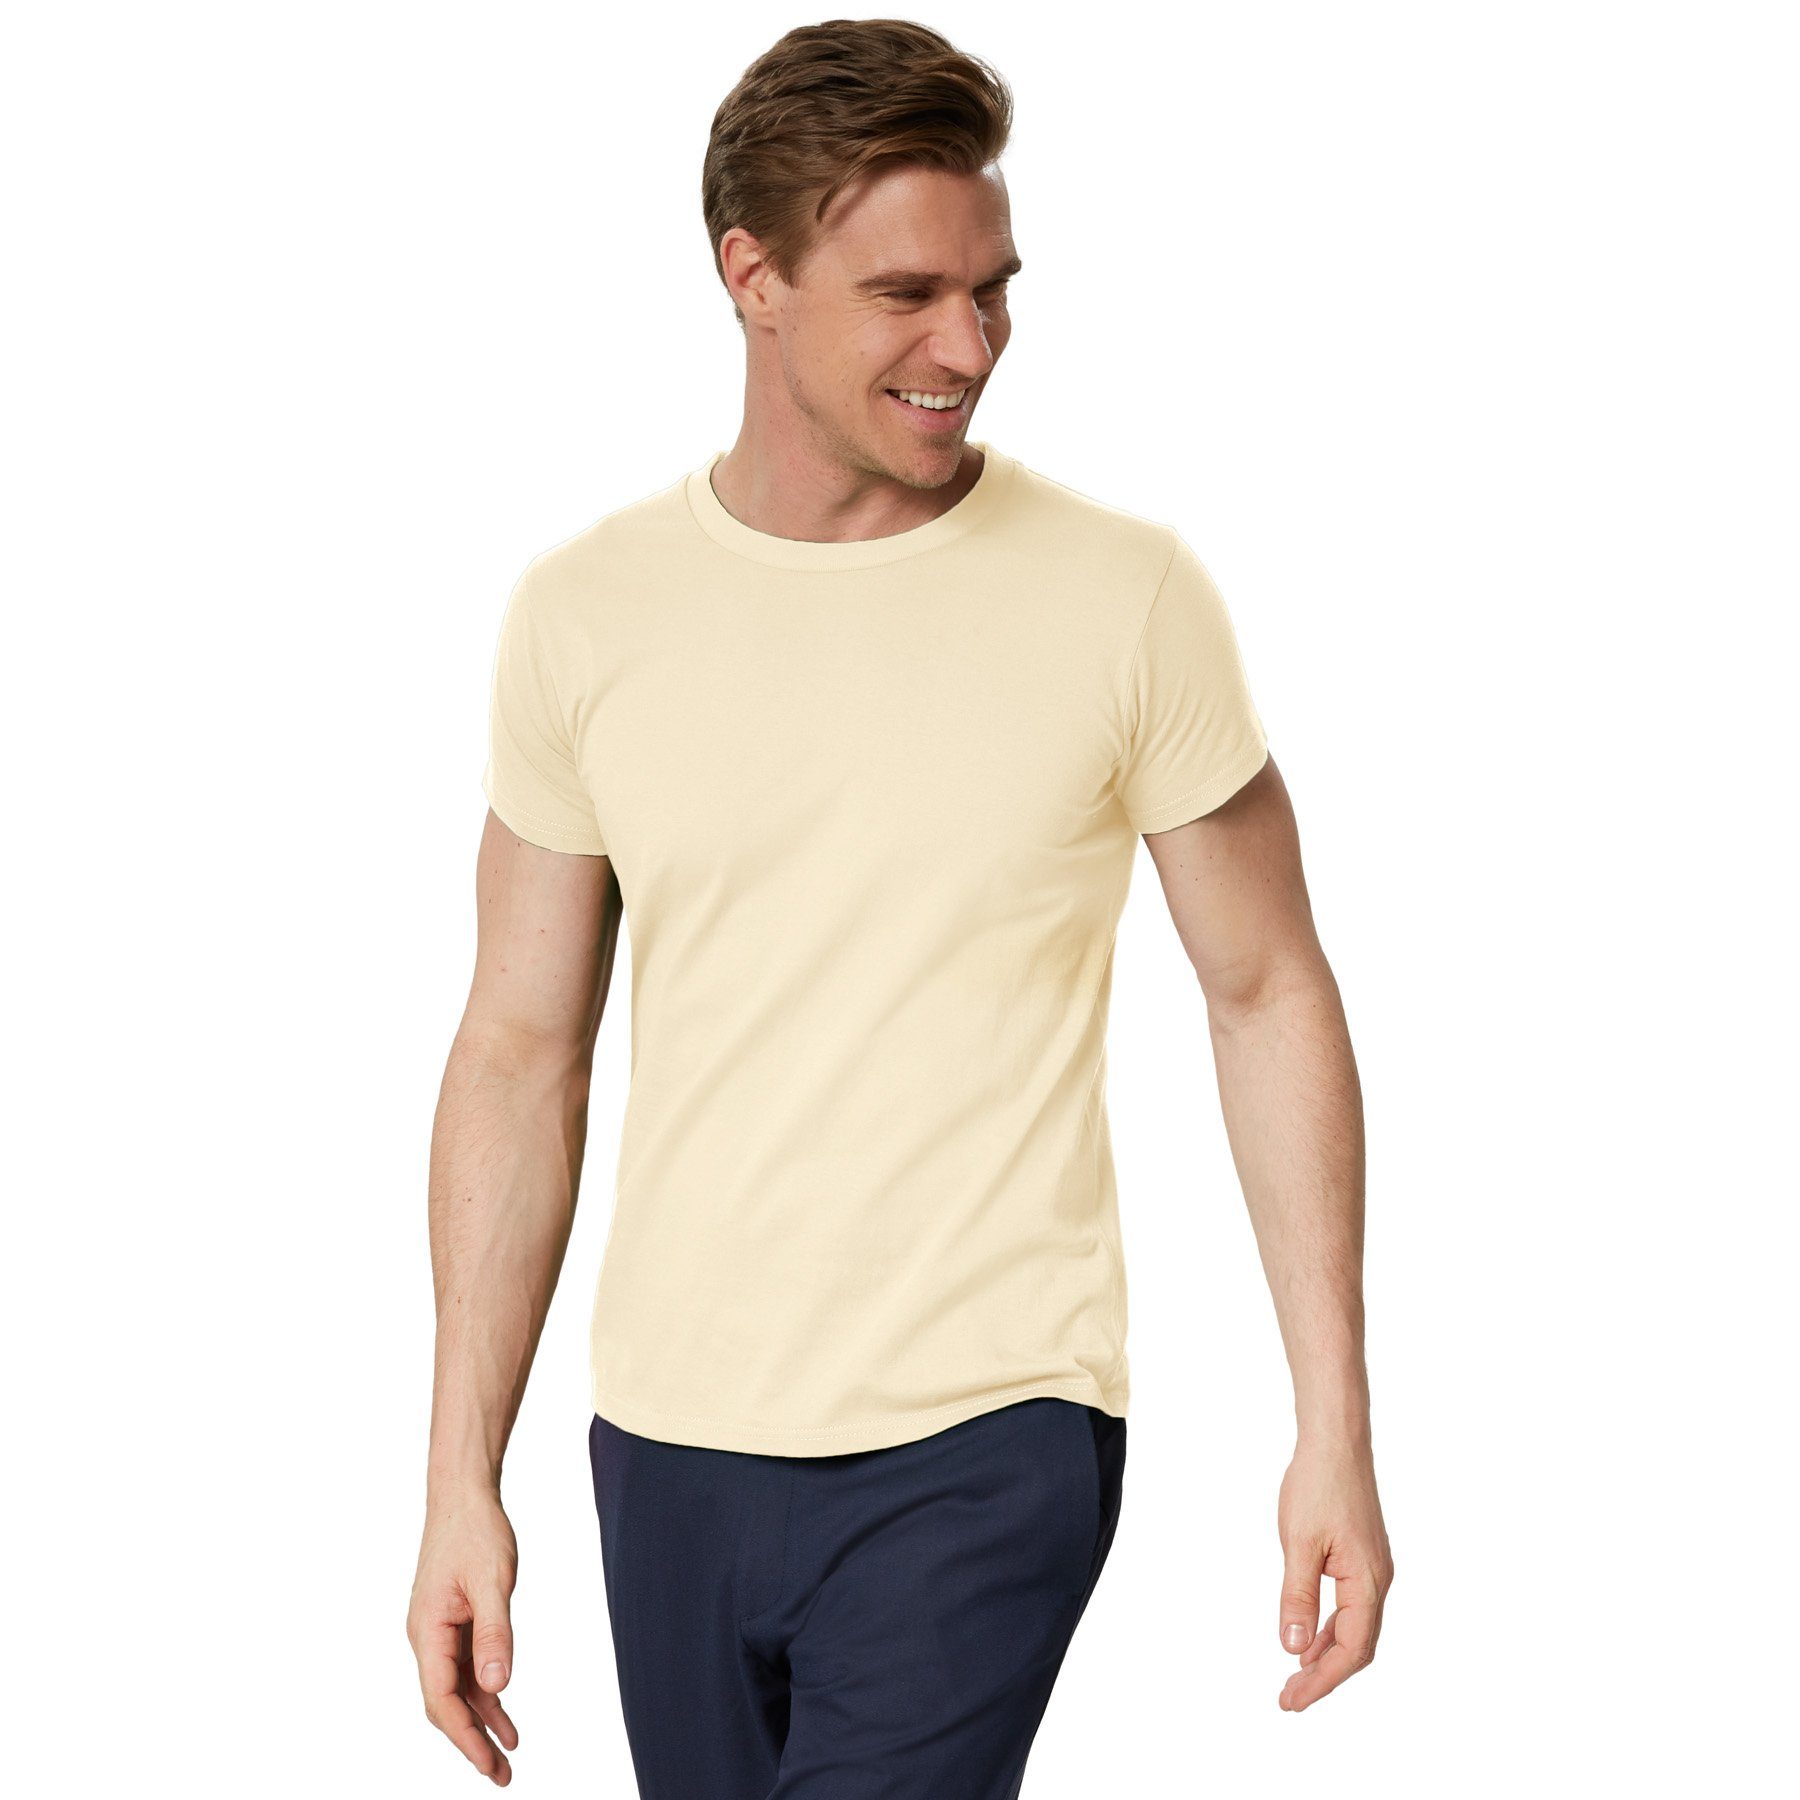 dressforfun T-Shirt T-Shirt Männer Rundhals beige